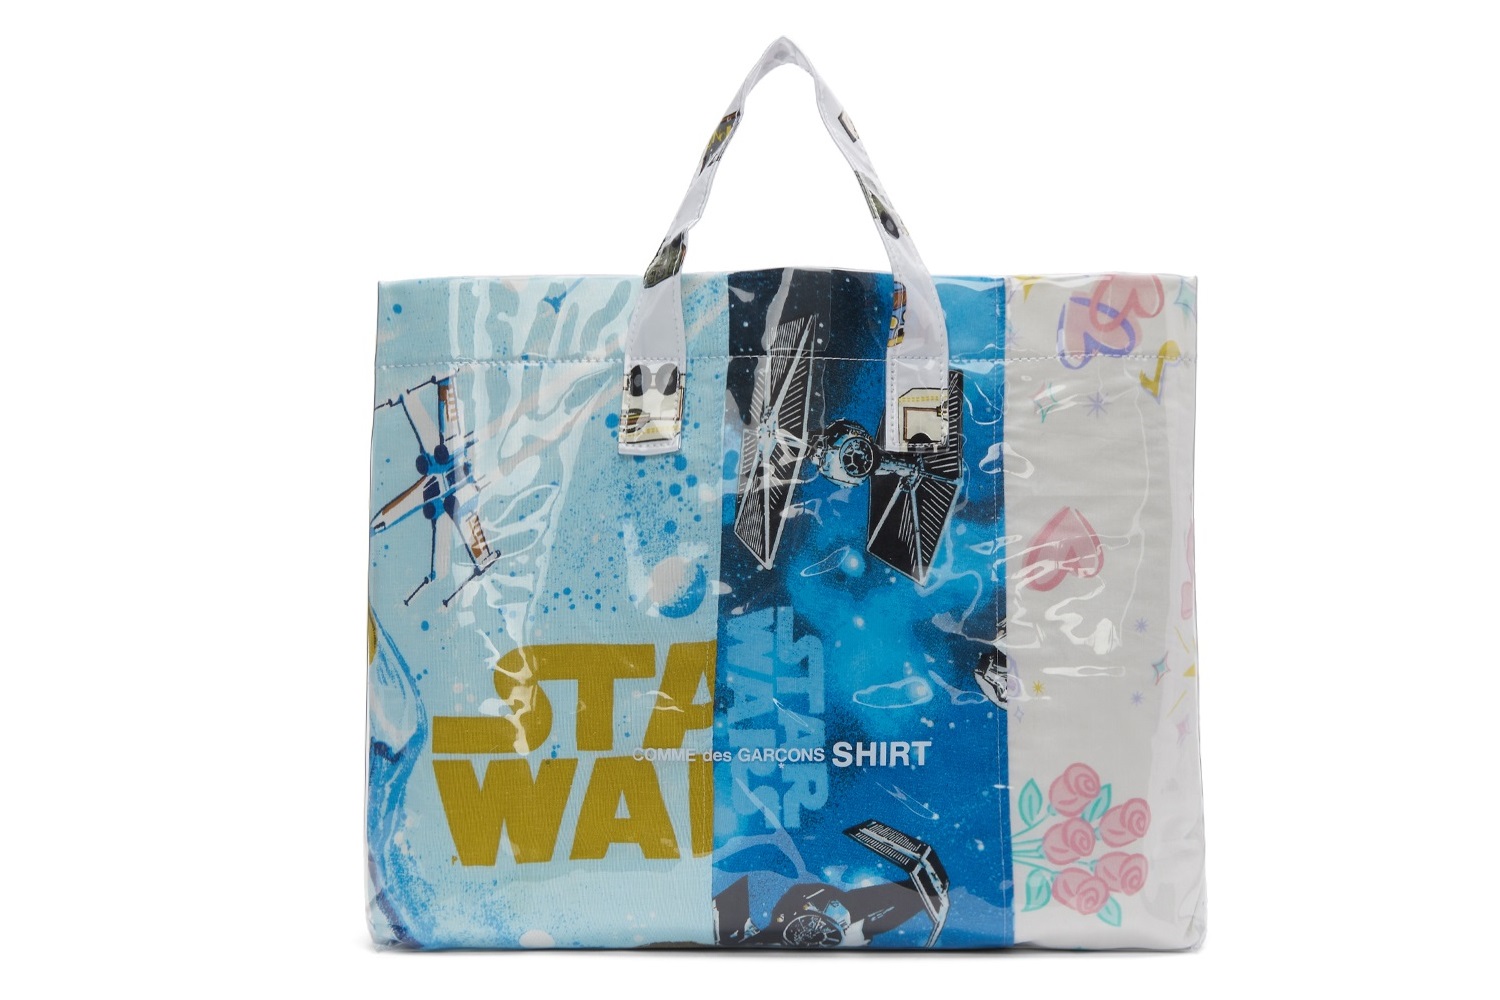 Comme des Garçons Star Wars Sheets Tote Bag